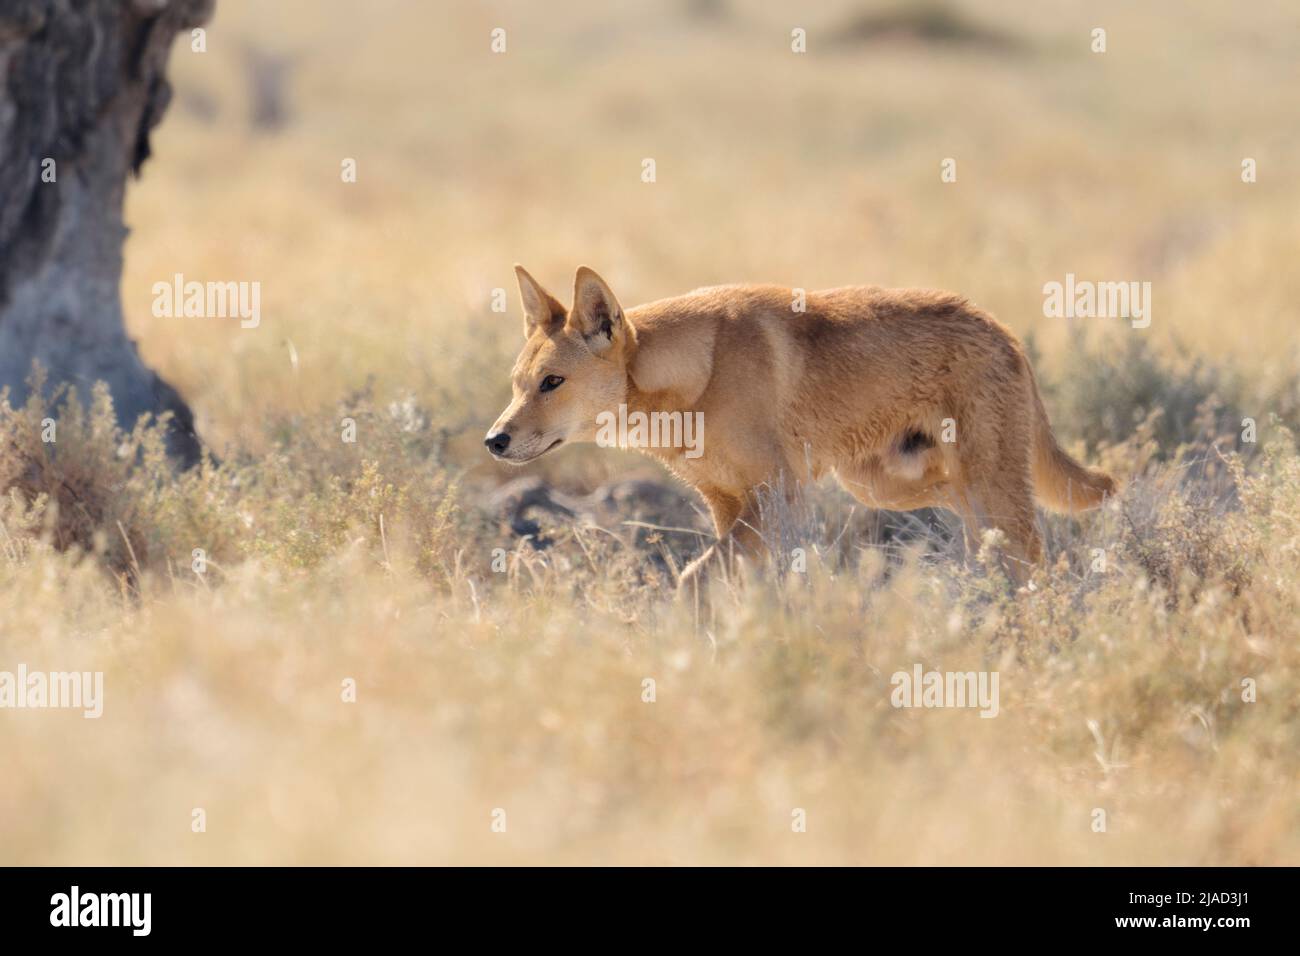 Wild dingo (Canis lupus dingo) stalking prey, Australia Stock Photo